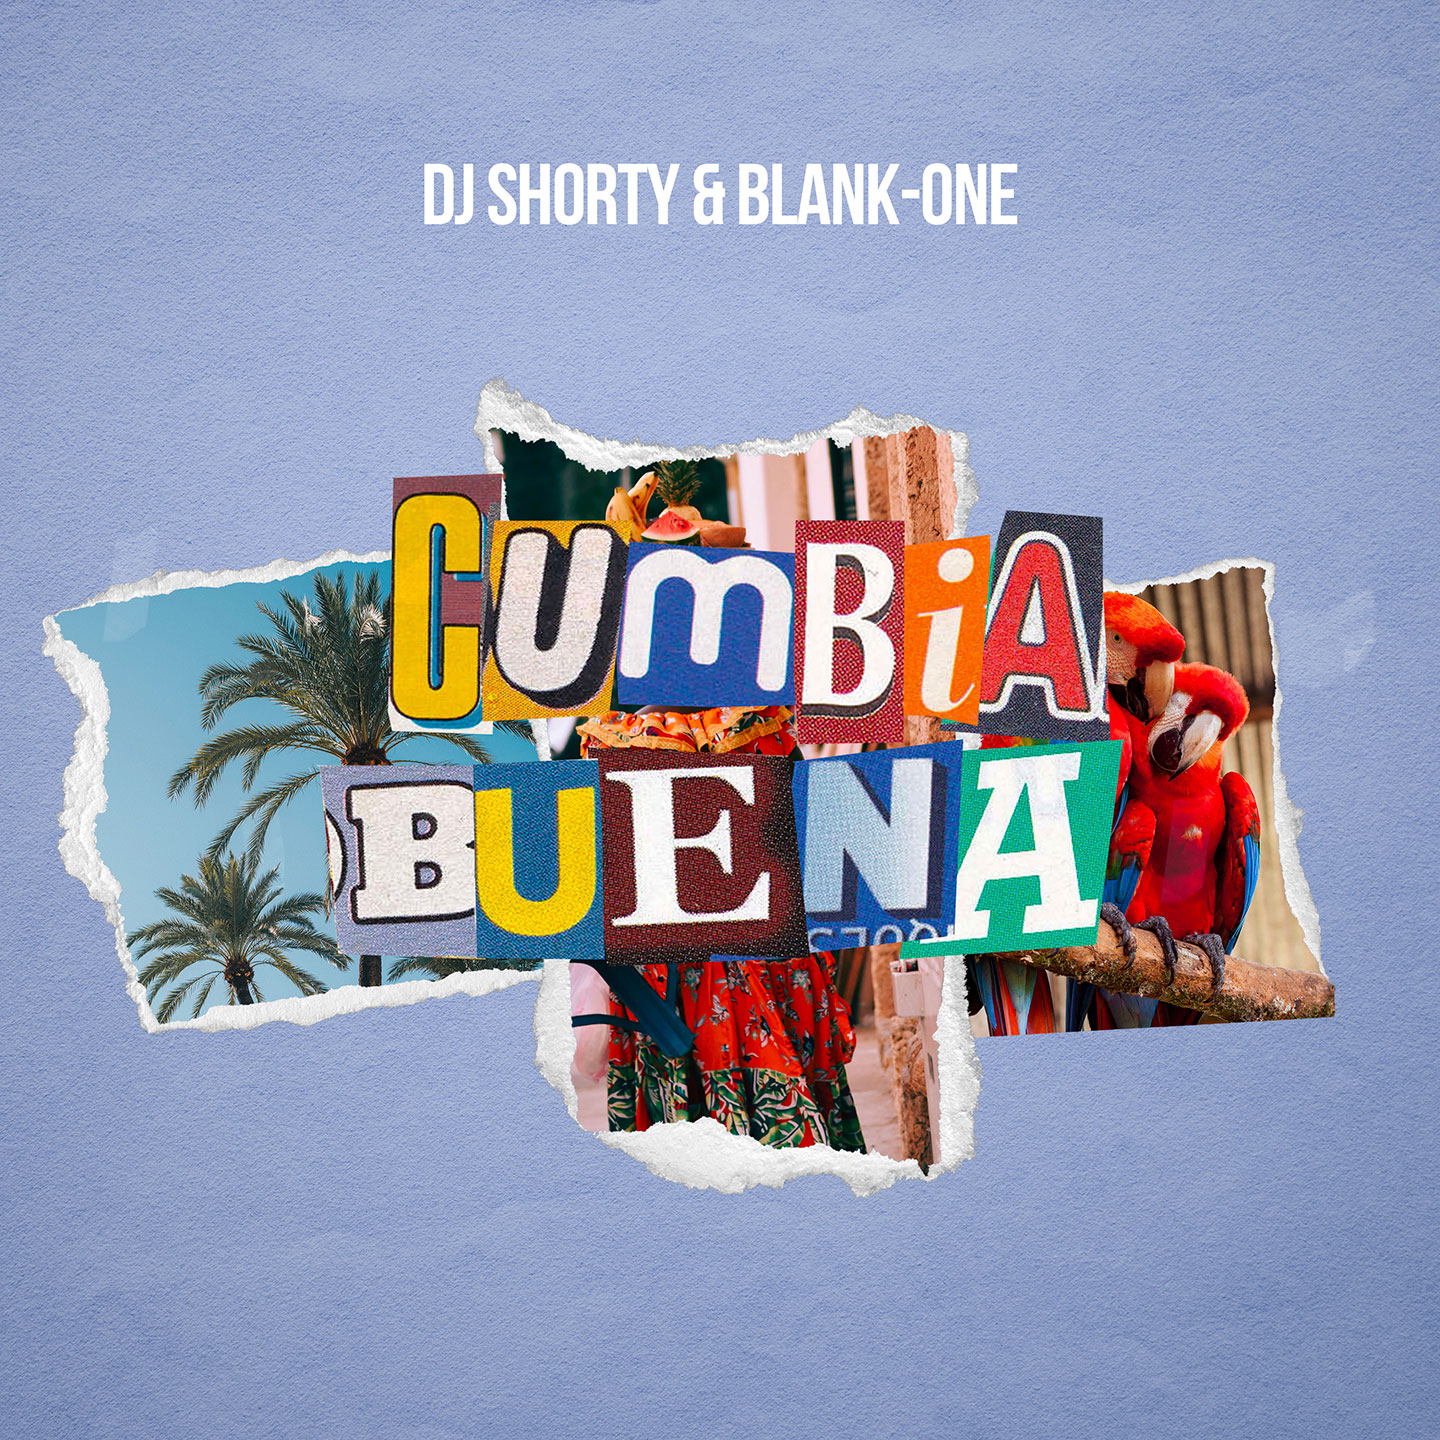 “Cumbia Buena” DJ SHORTY & BLANK-ONE Etichetta Time Edizioni Discos Fuentes Edimúsica S.A. in radio dal 9 settembre 2022